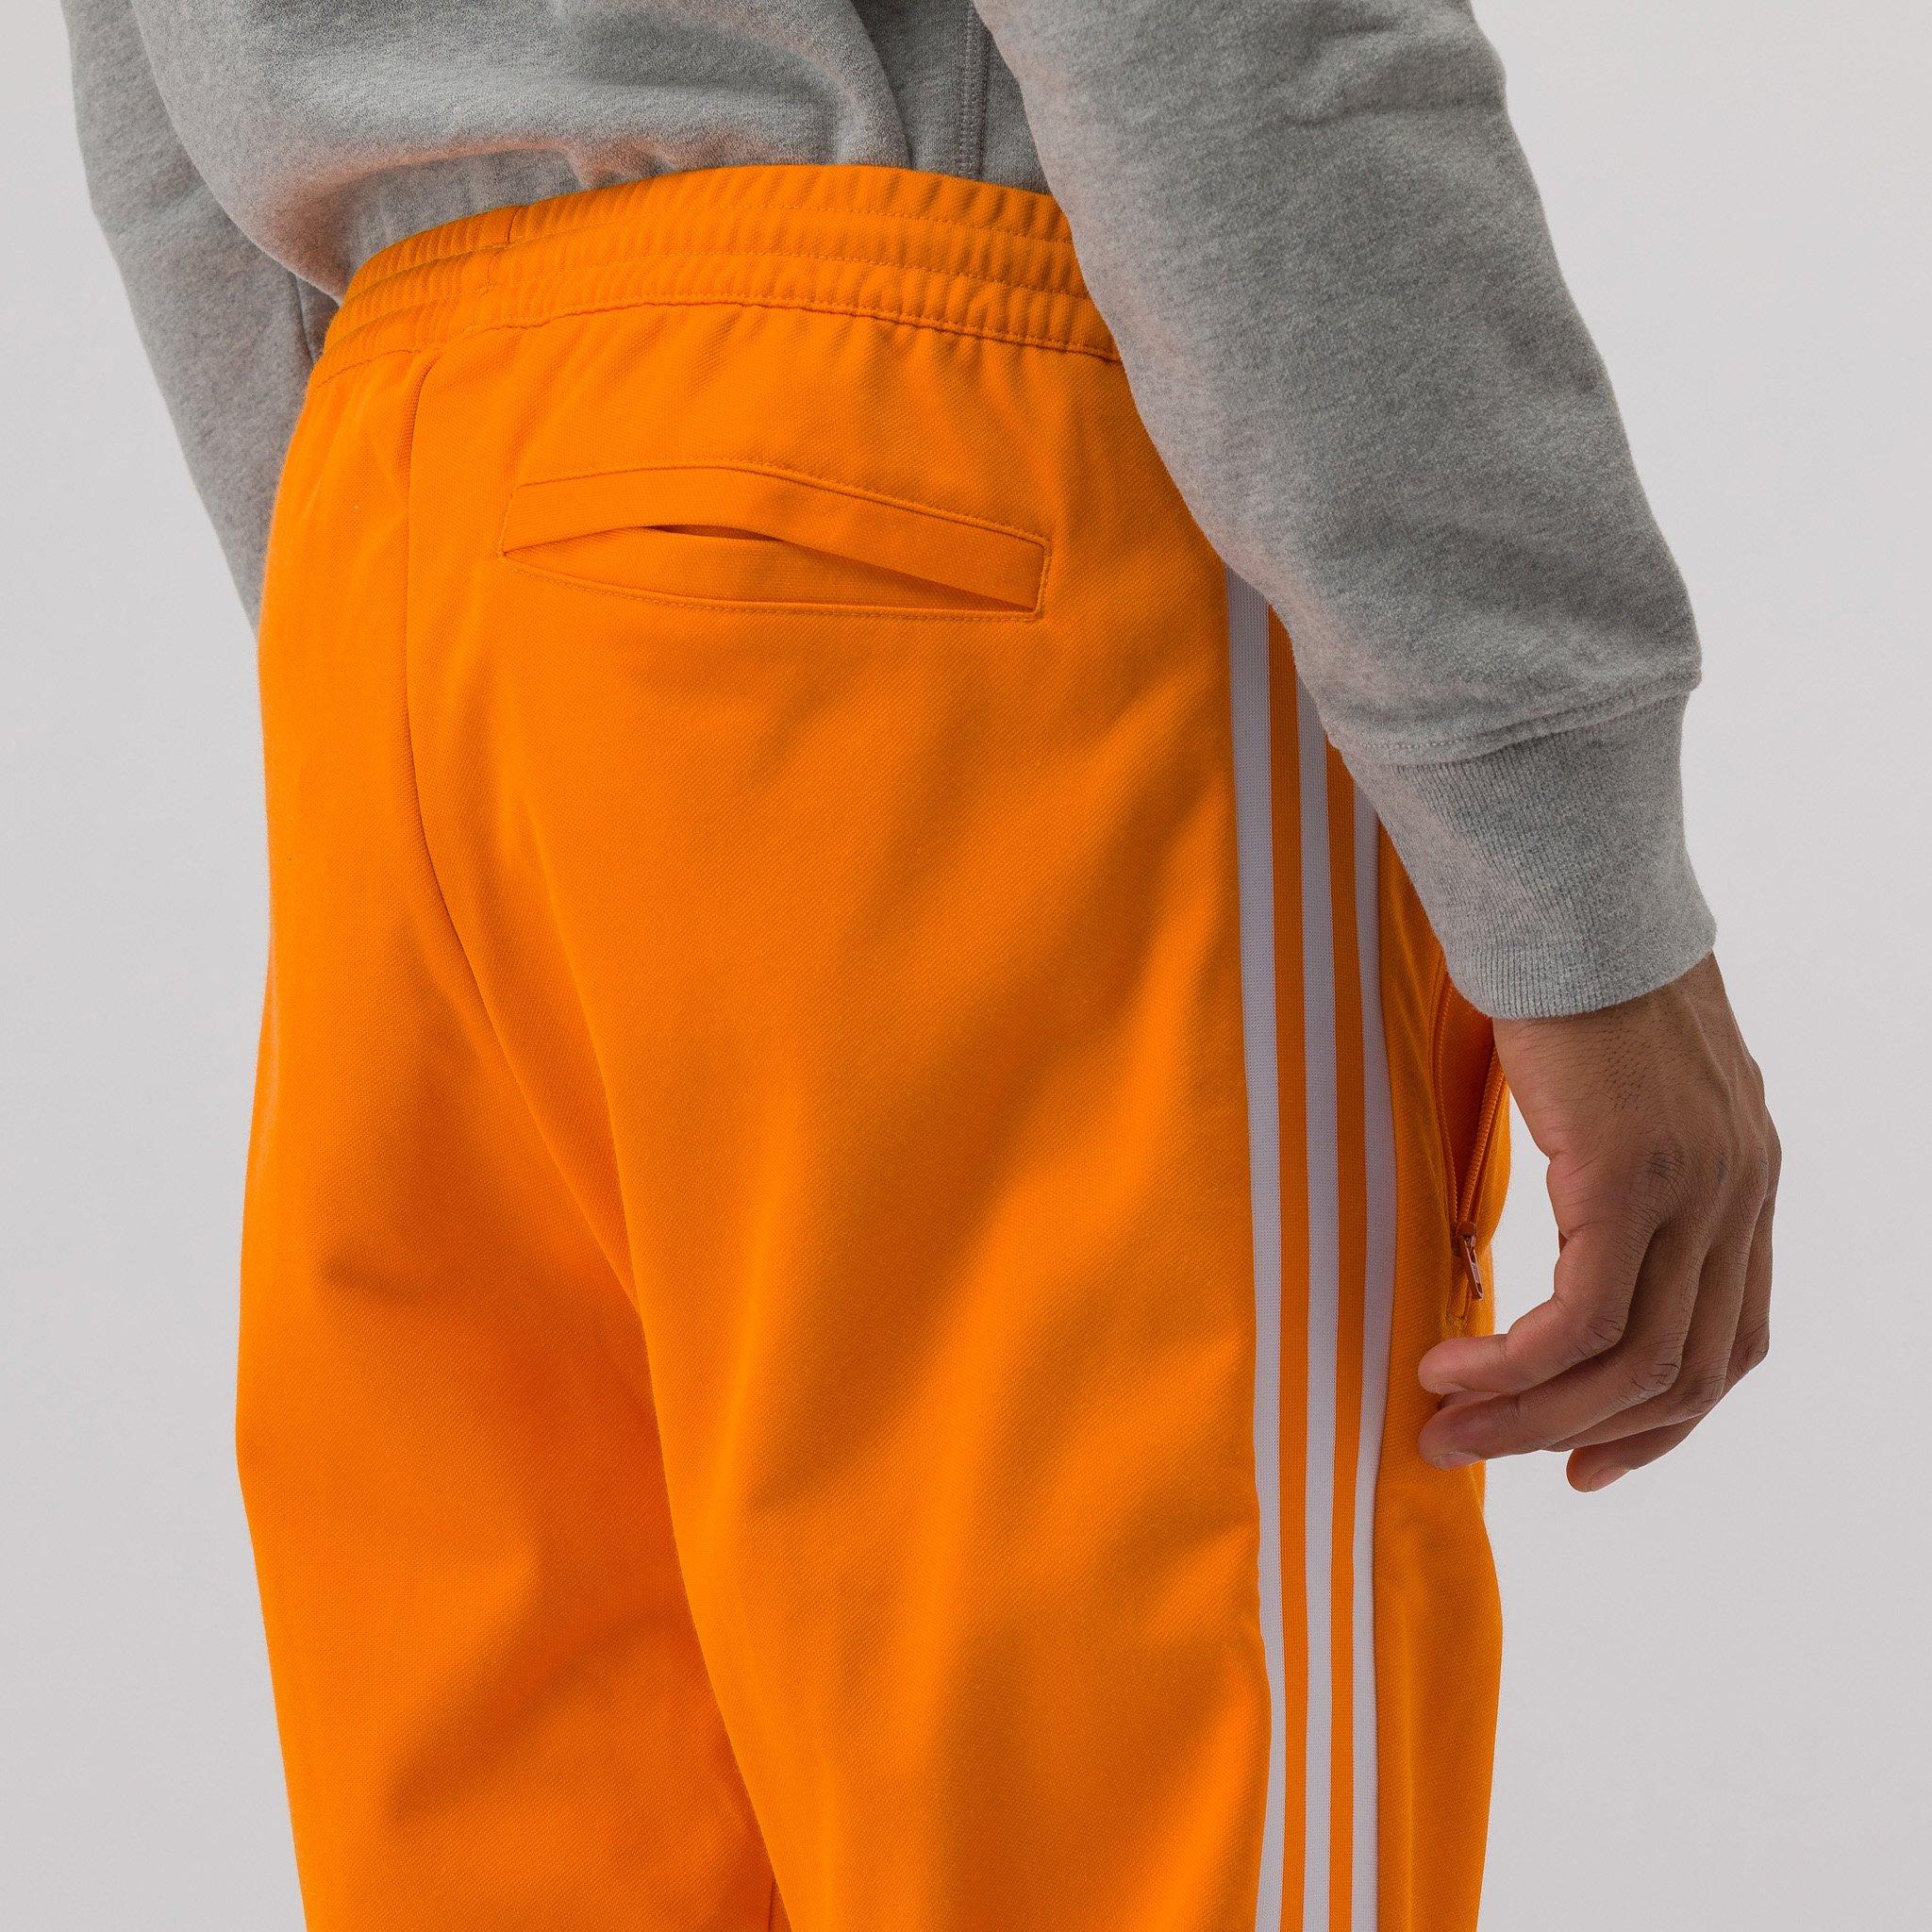 يثرى غريب بساطة الاعتماد العجز ربع الدائرة adidas beckenbauer orange pants  - jpsfishingadventures.com